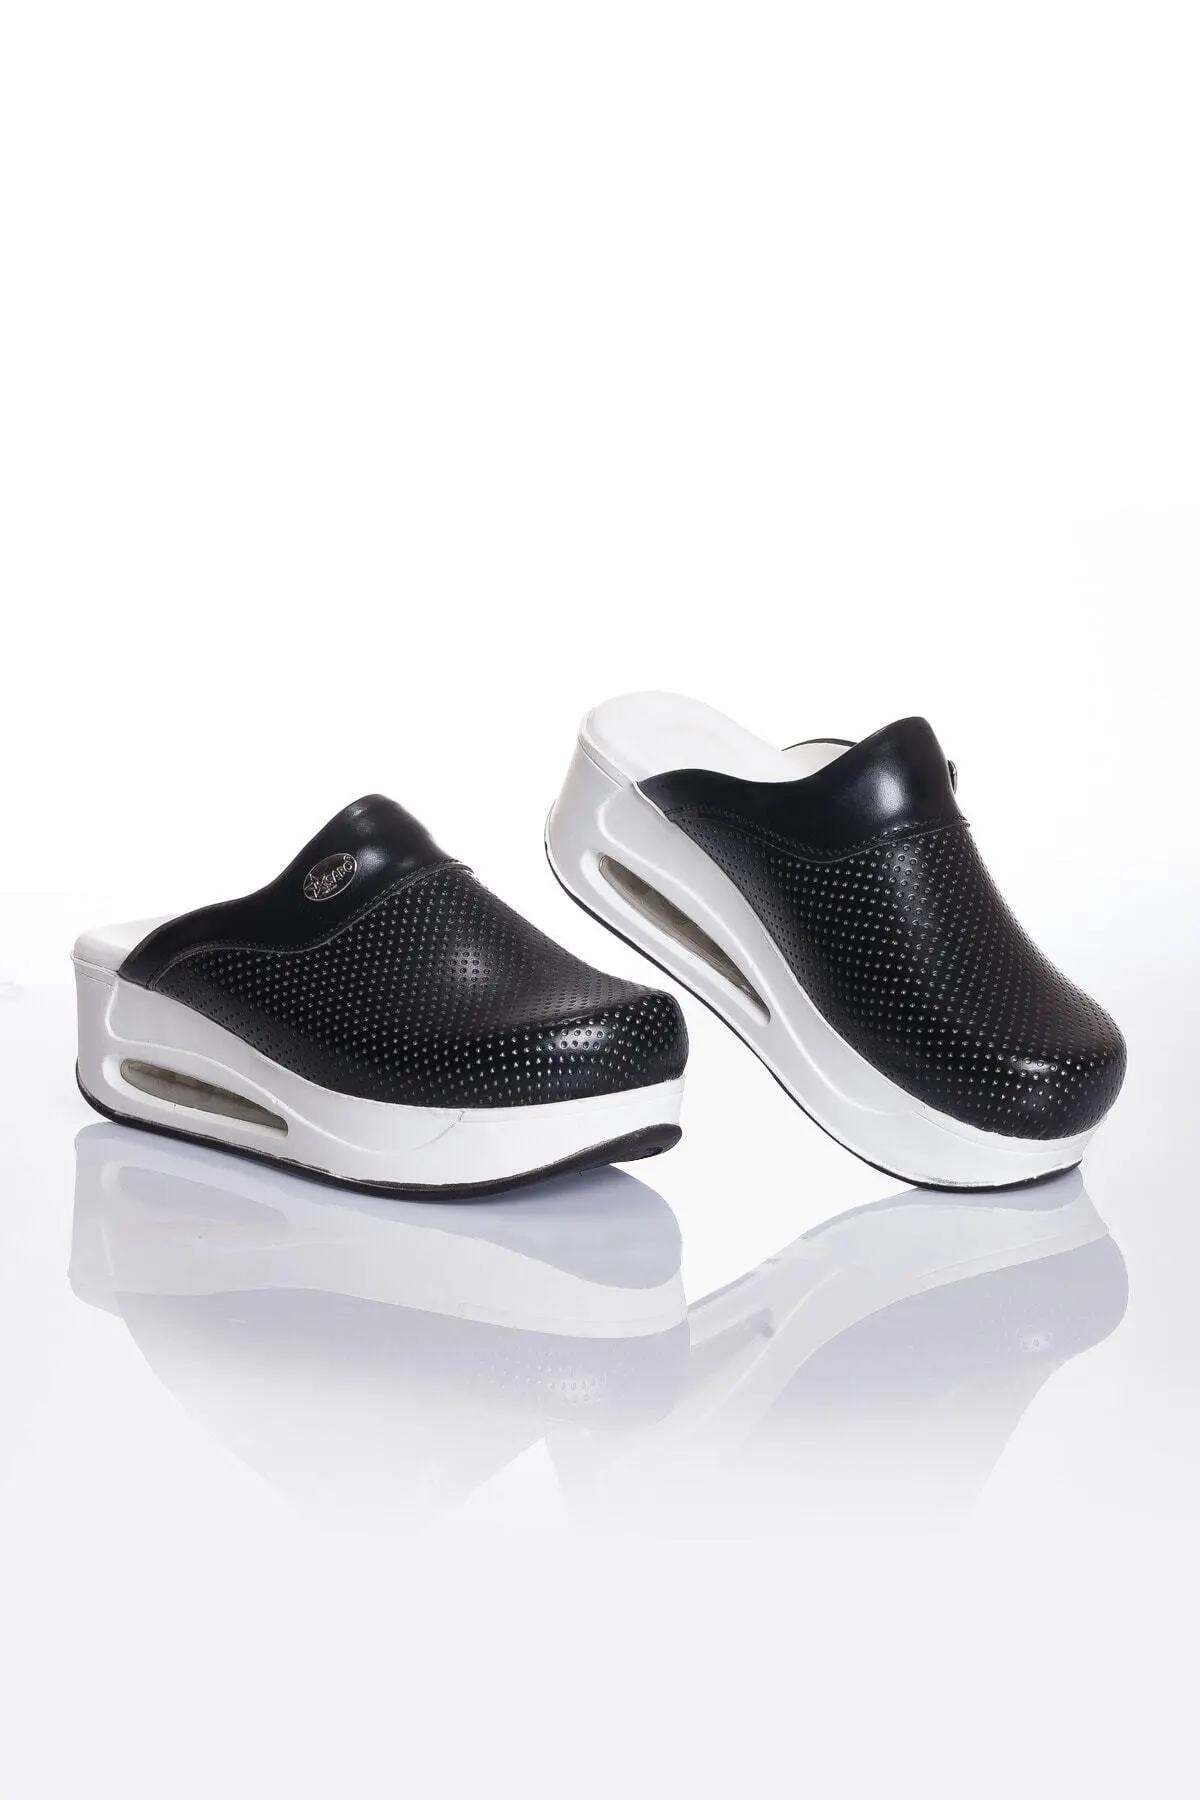 2023 Nou Pantofi Ortopedici Pentru Femei Sabo Papuci Sandale Flip Flops Asistenta Medical Casual, Calitate, Confort Anti-Alunecare Saboți1